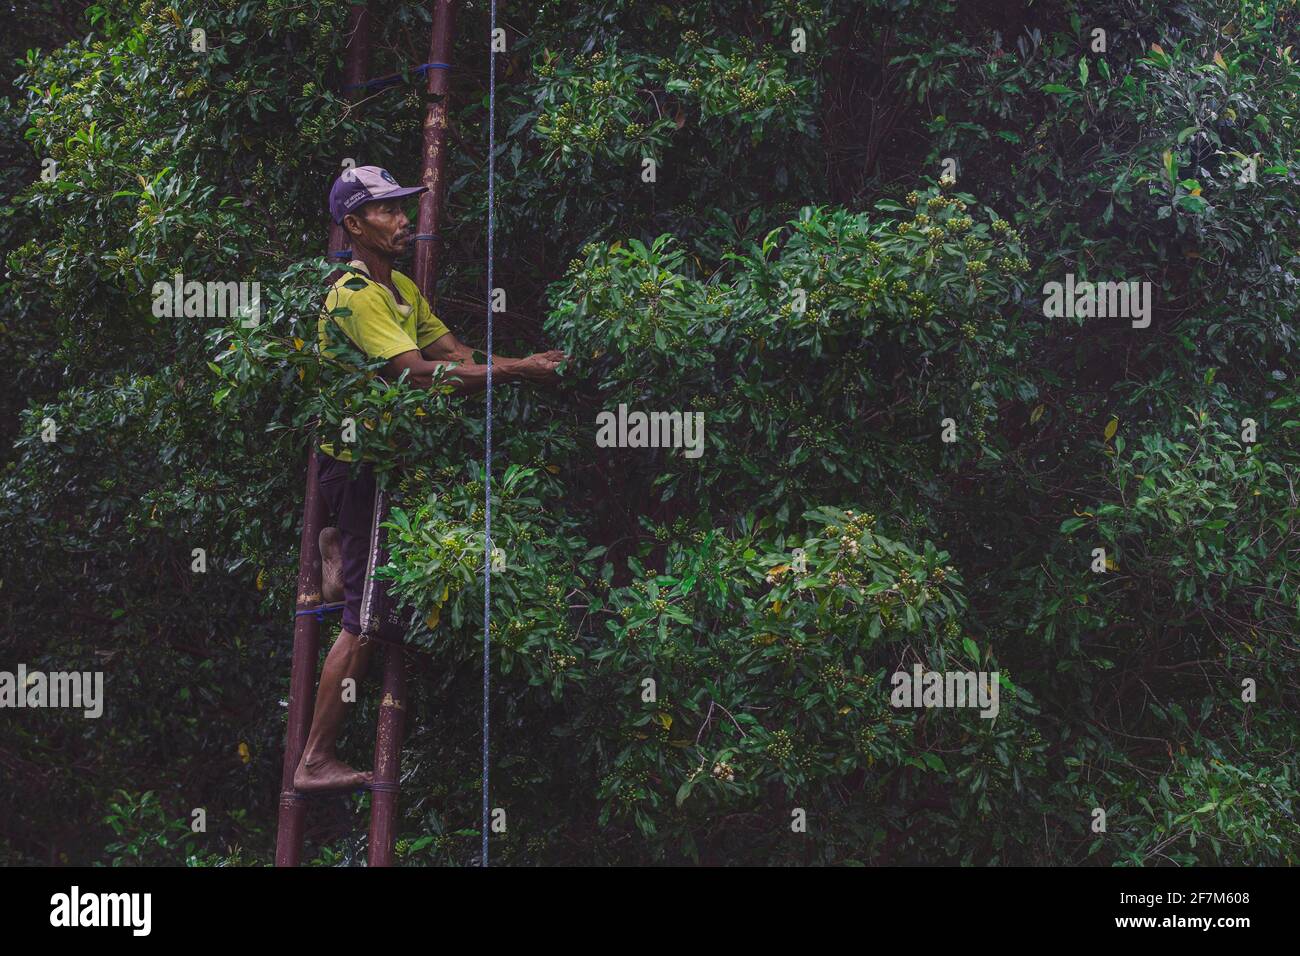 Am 20. Juli 2019 erntet ein Mann im Dorf Sudaji im Norden Balis Nelken. UN homme récole des clous de girofle dans le Village de Sudaji Stockfoto